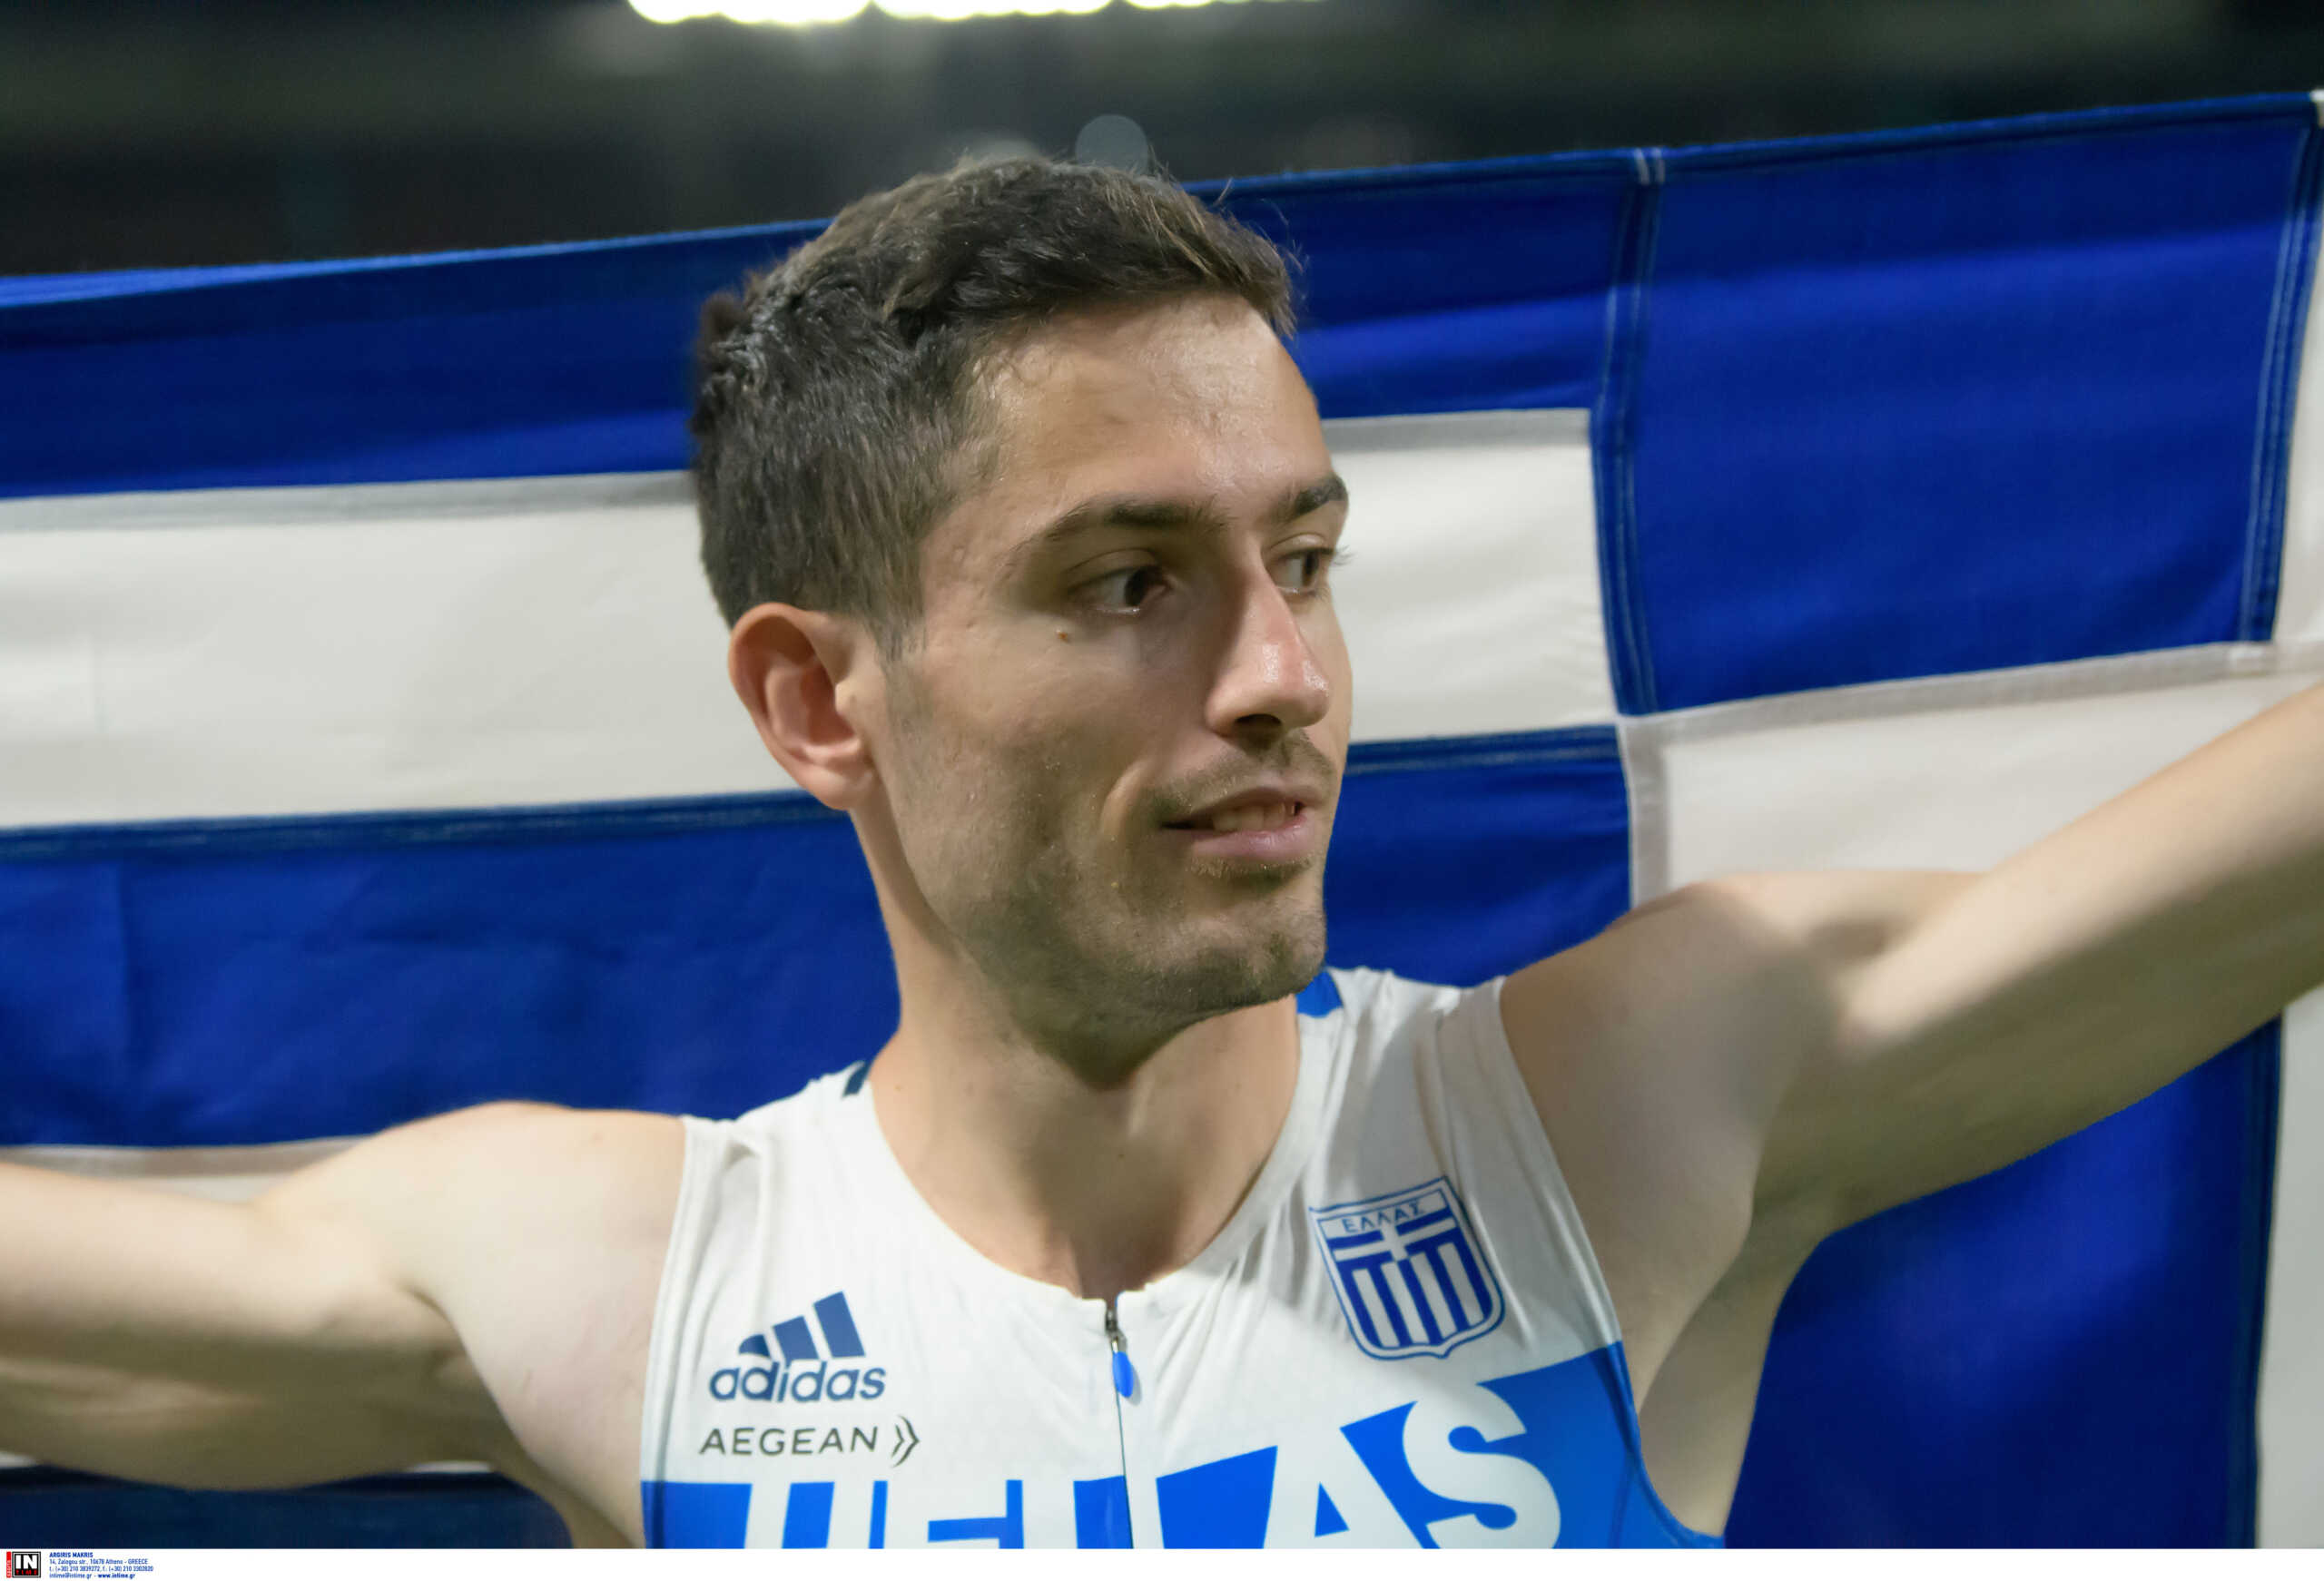 Ο Μίλτος Τεντόγλου αναδείχθηκε κορυφαίος αθλητής στα Βαλκάνια για το 2022